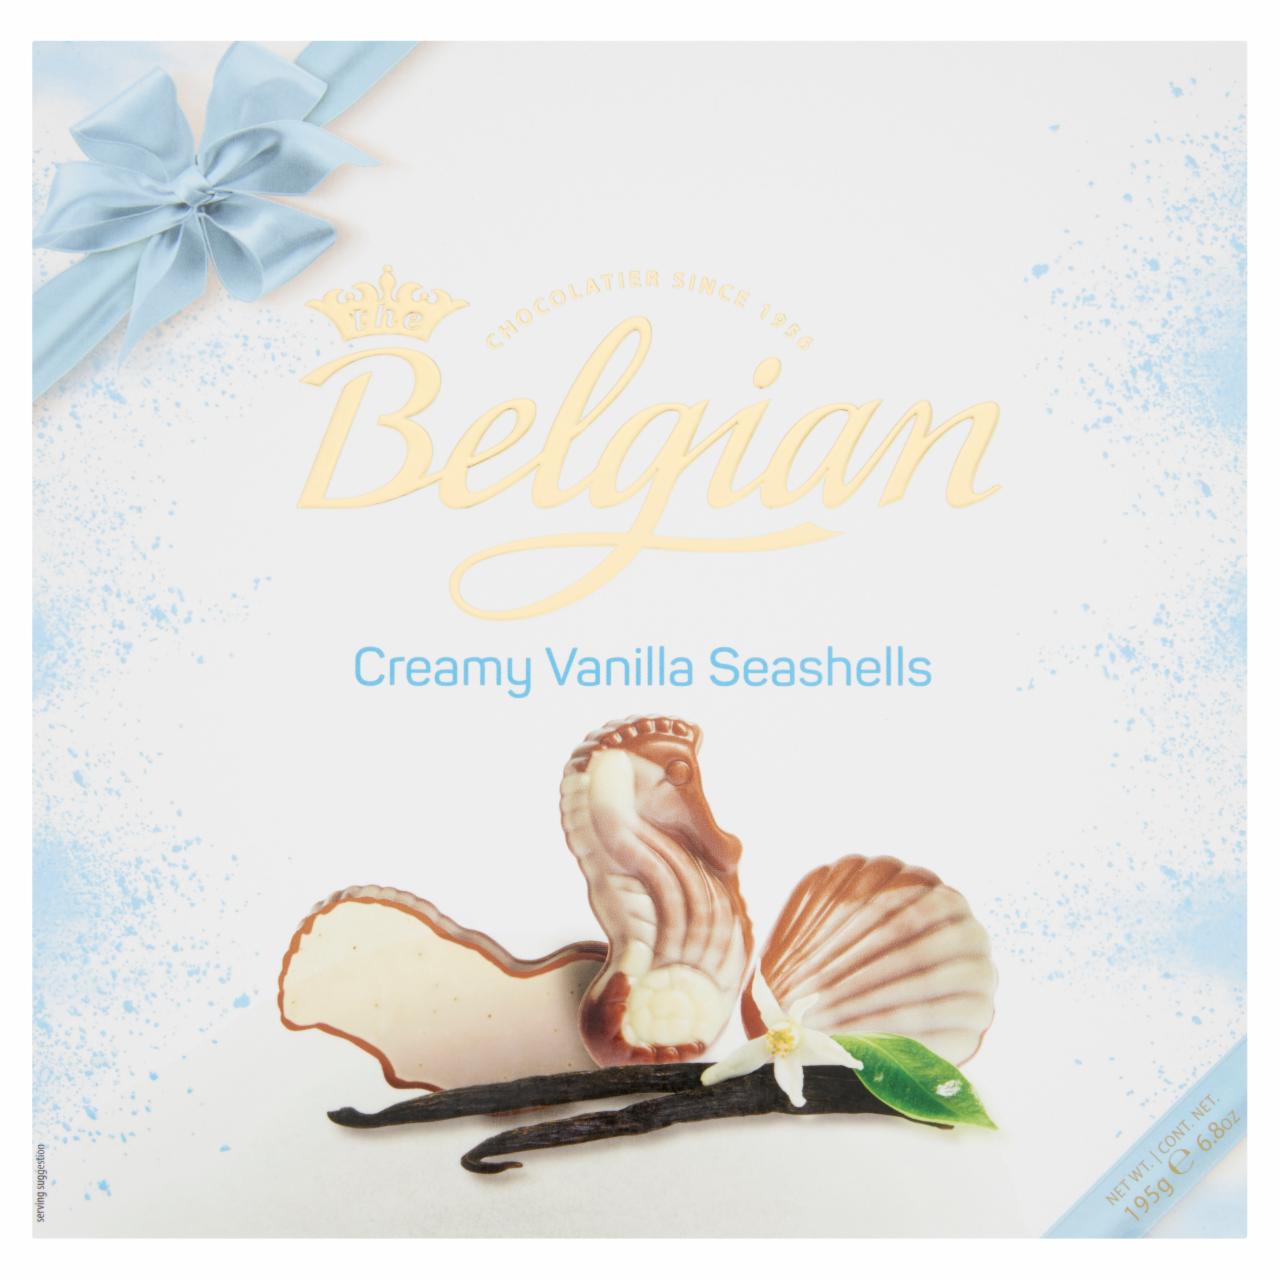 Képek - Belgian Creamy Vanilla Seashells belga csokoládé praliné 195 g